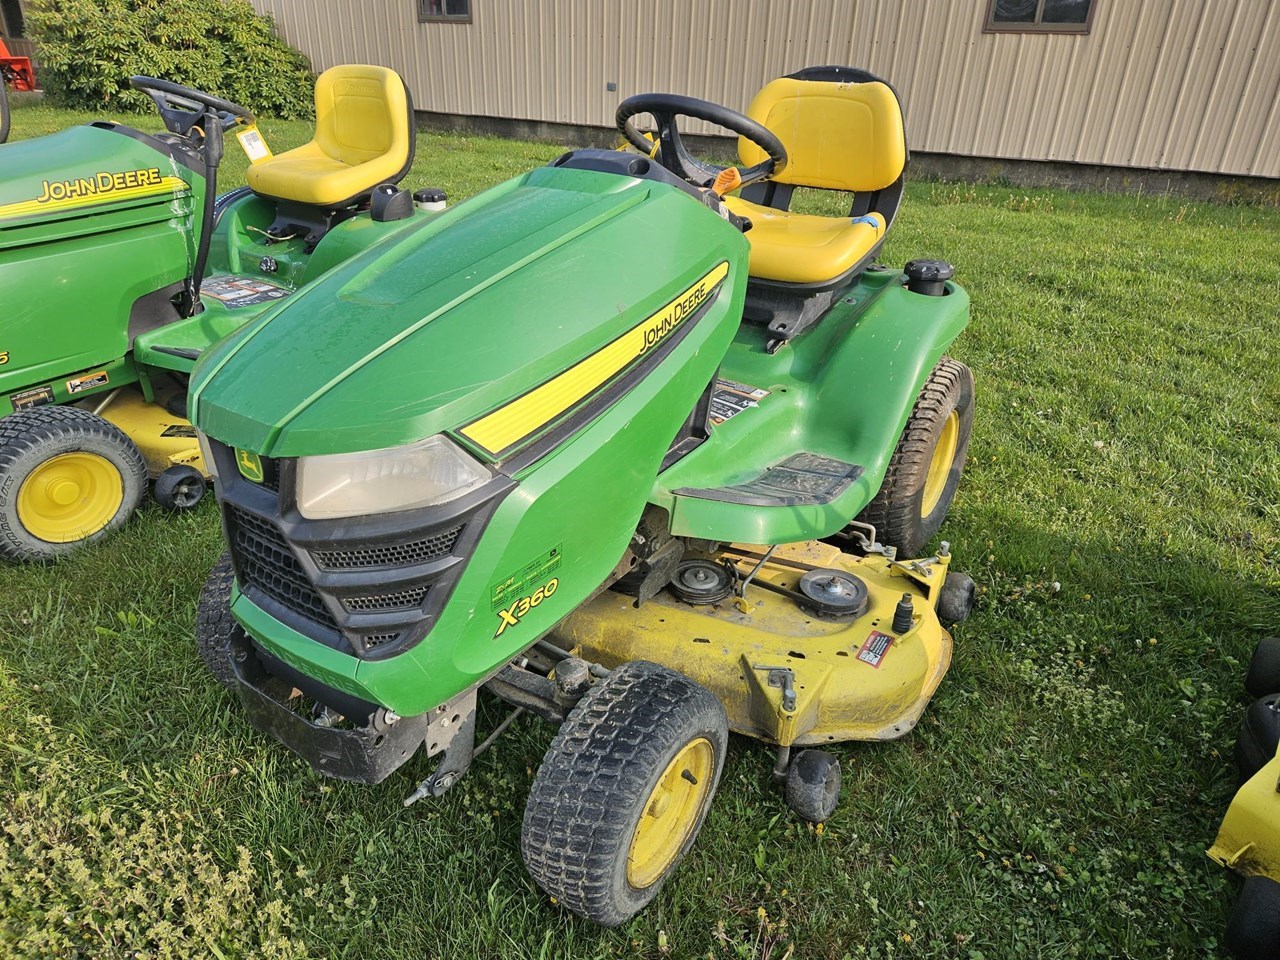 2015 John Deere X360 Lawn Mower For Sale